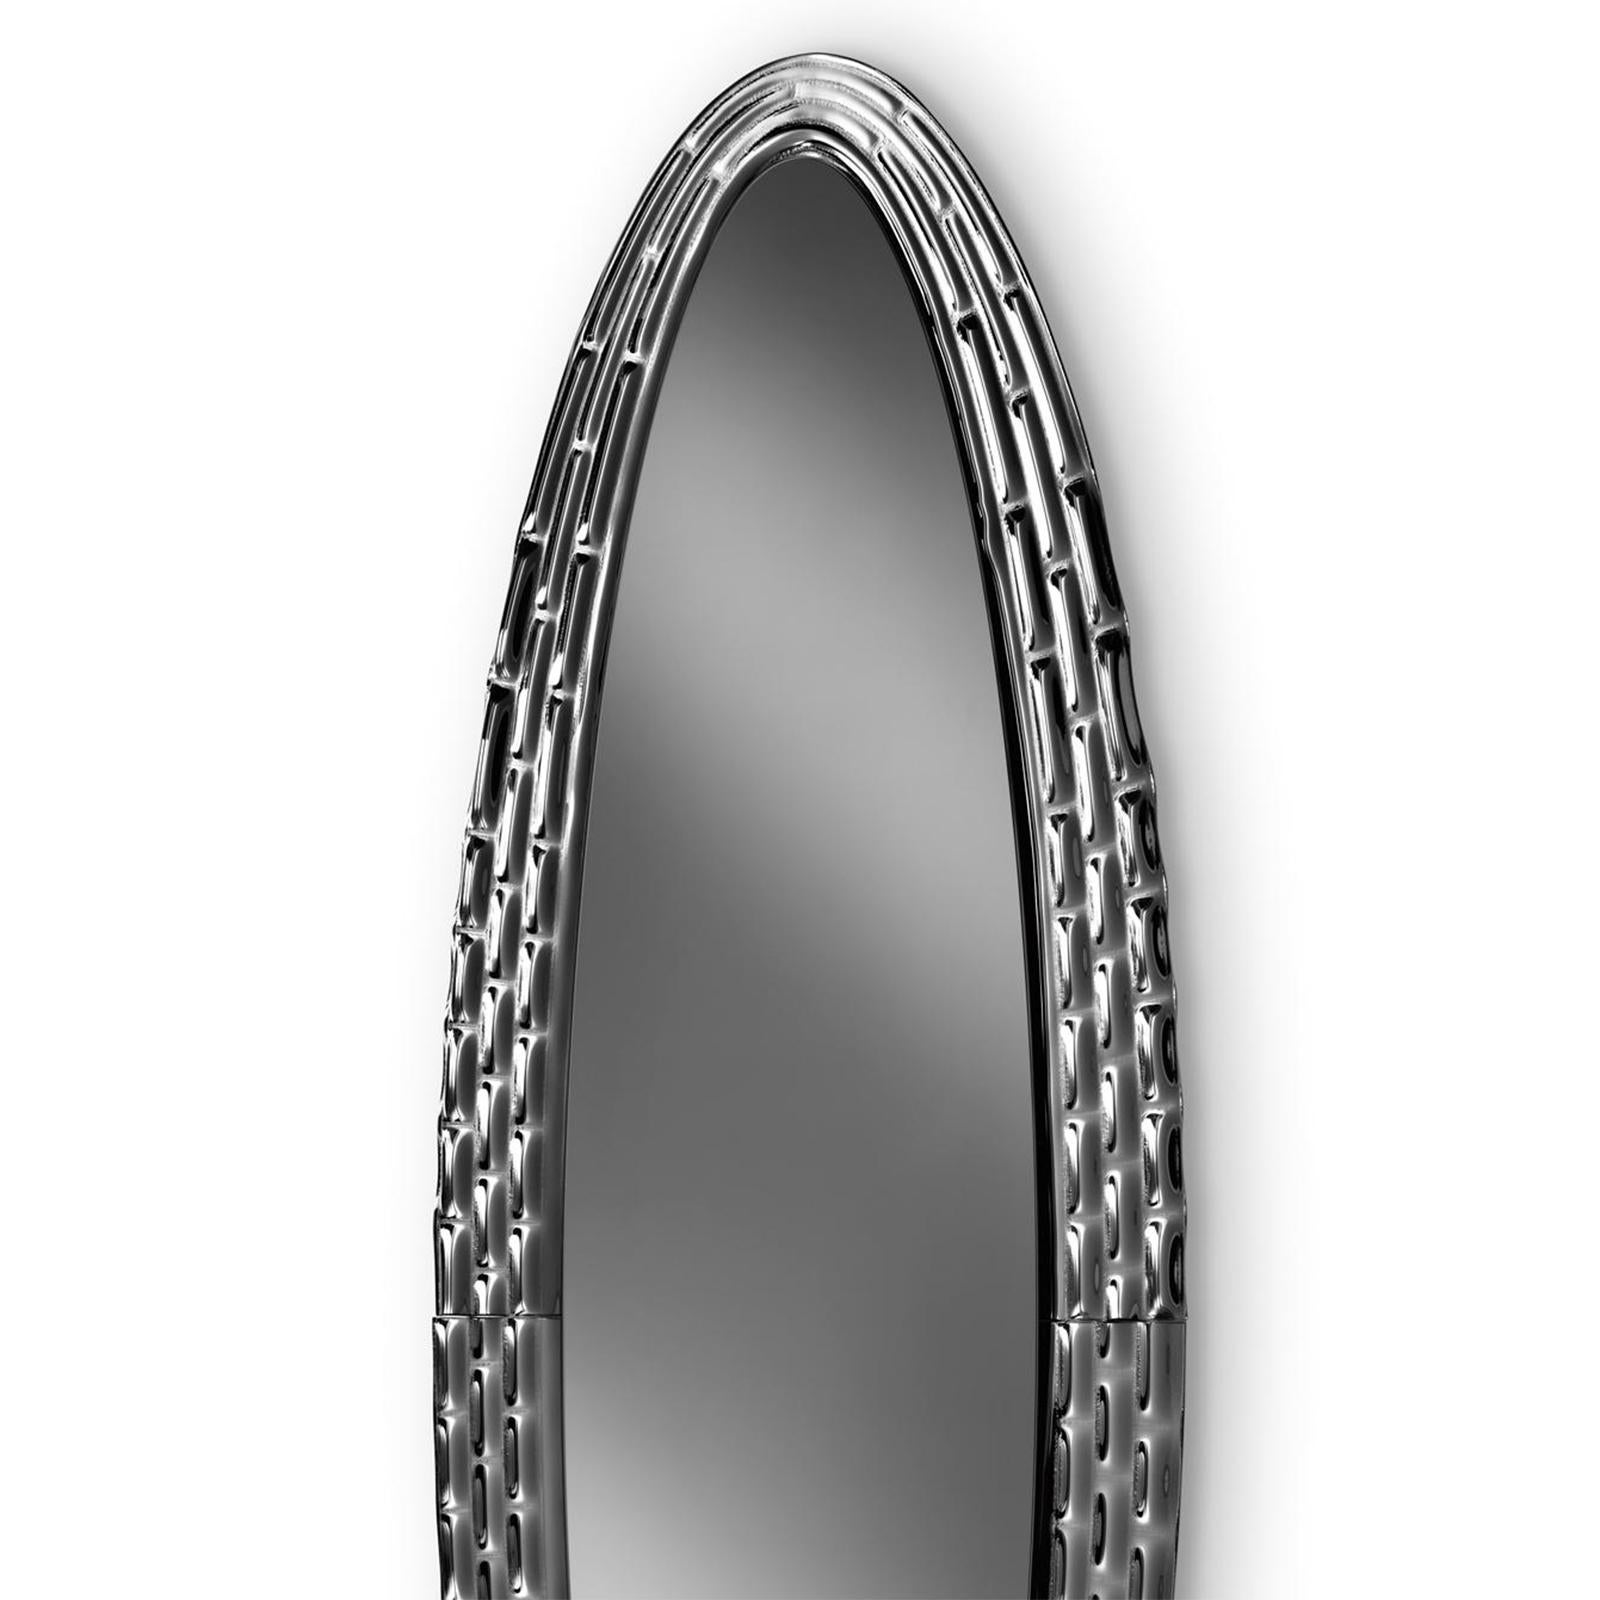 Miroir manoir noir ovale en verre fusionné 6mm
d'épaisseur avec un cadre en contre-argent. Avec miroir plat en
finition fumée épaisseur 5mm.
Egalement disponible en finition bronze.